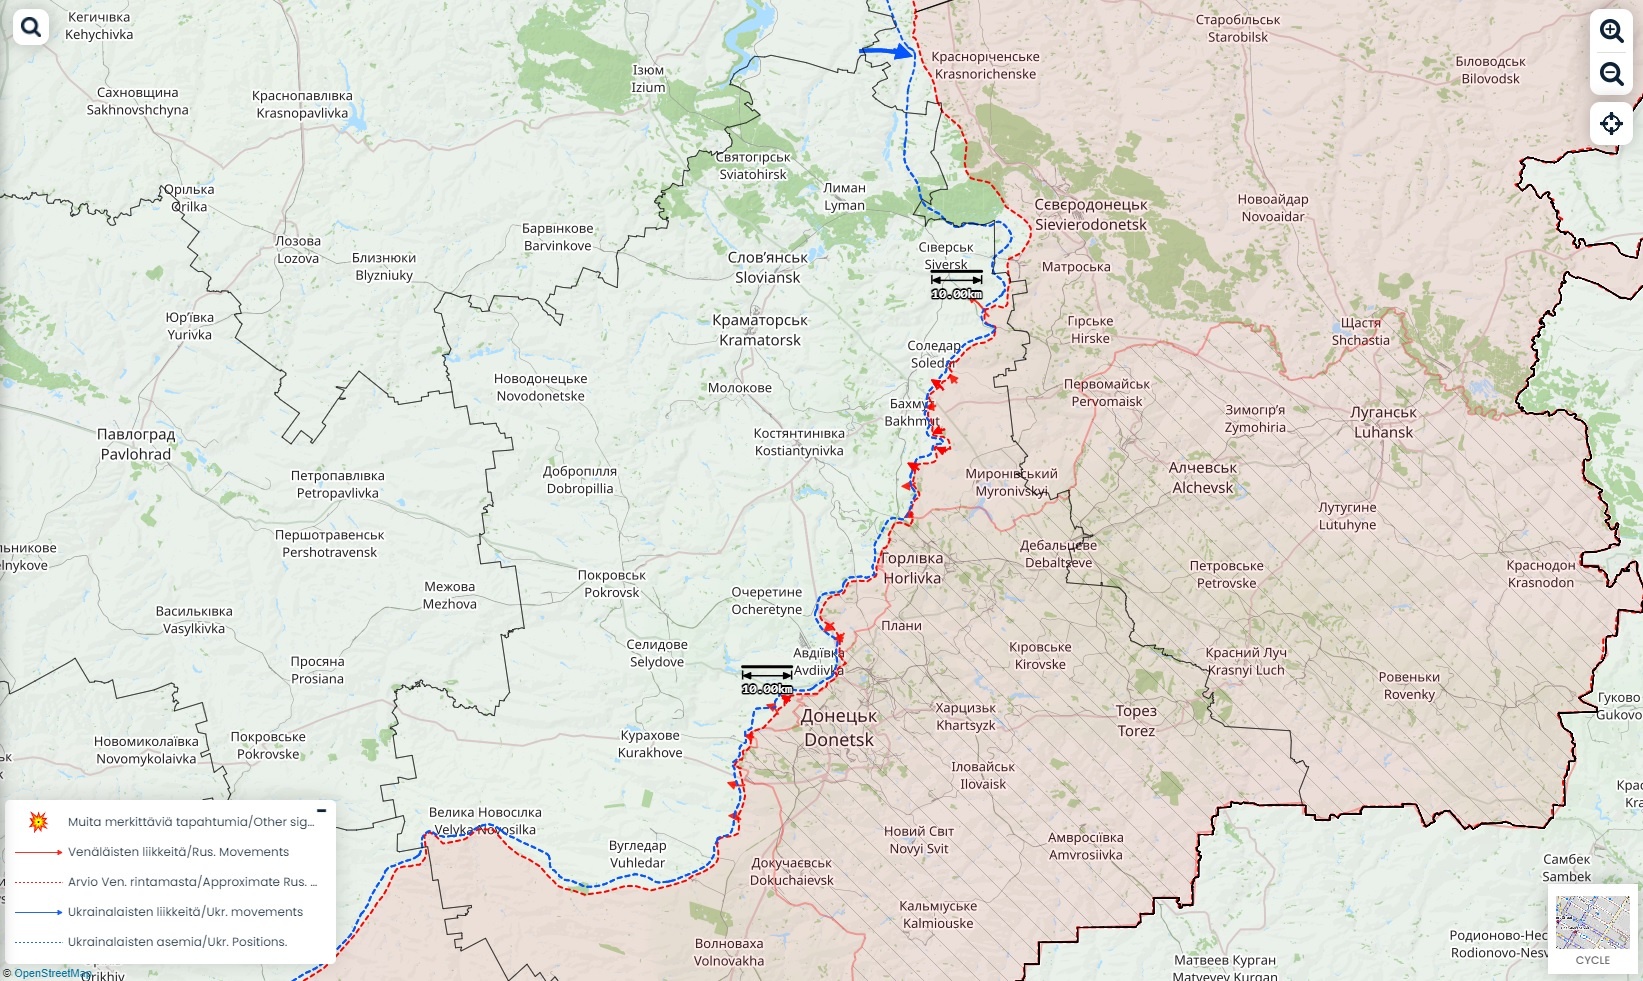 Itä-Ukrainan kartta, jossa näkyy venäläishyökkäyksiä.